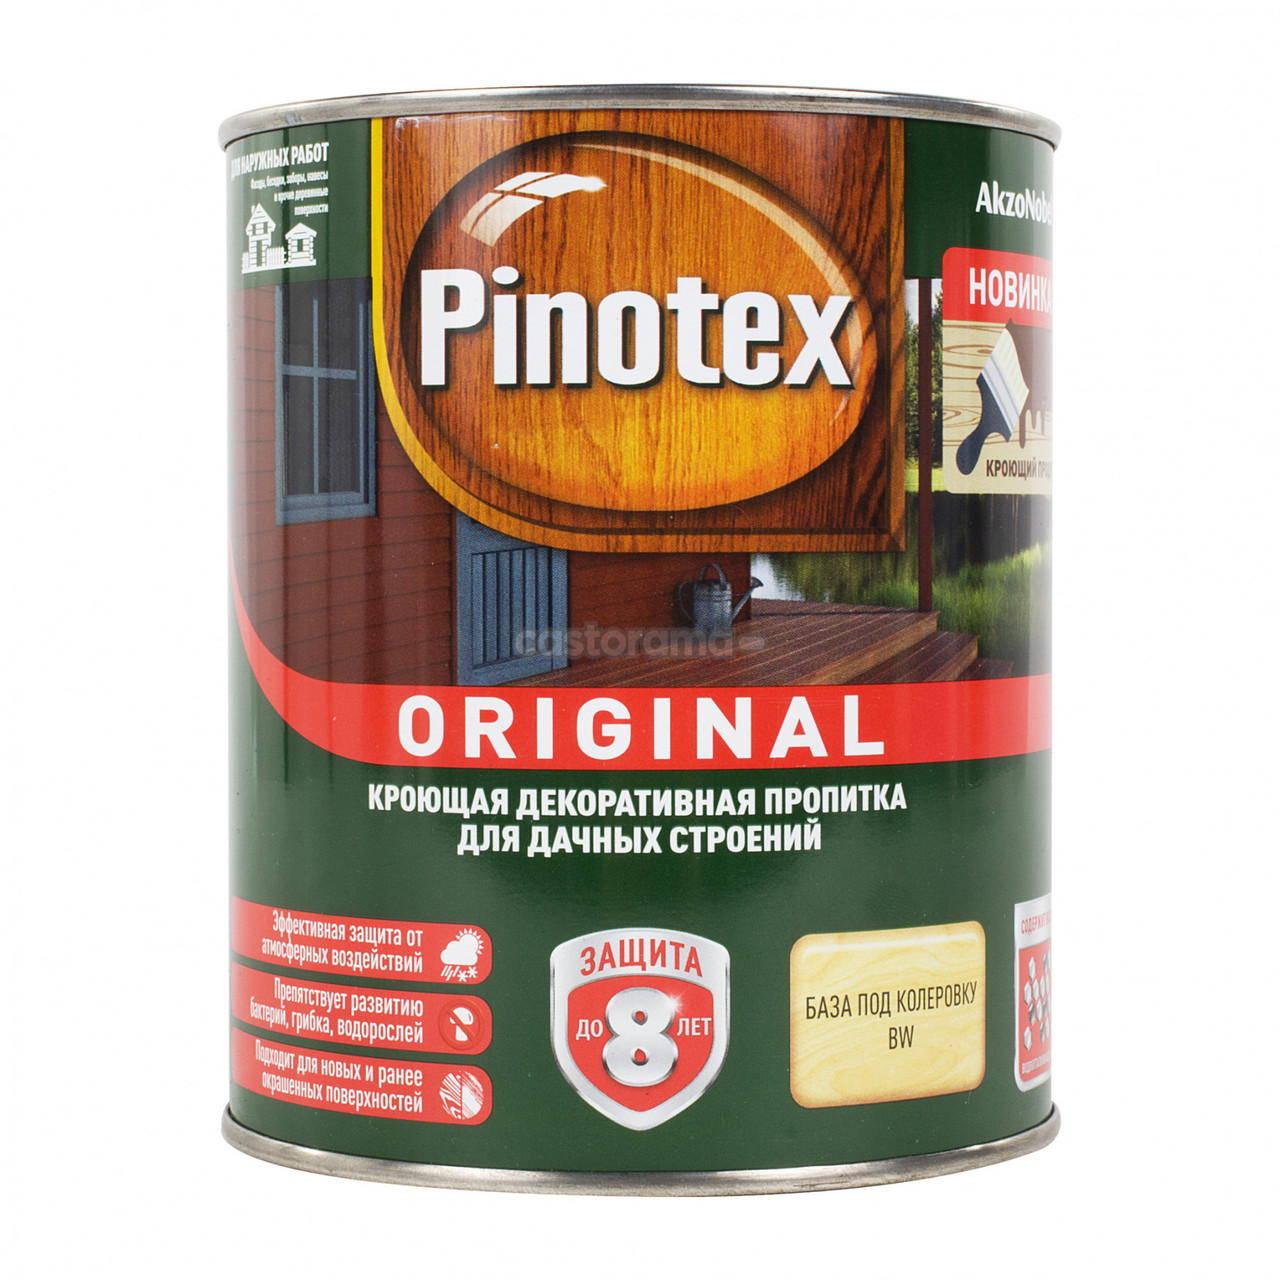 Пропитка Pinotex Original кроющая для деревянных поверхностей BW, 2.7